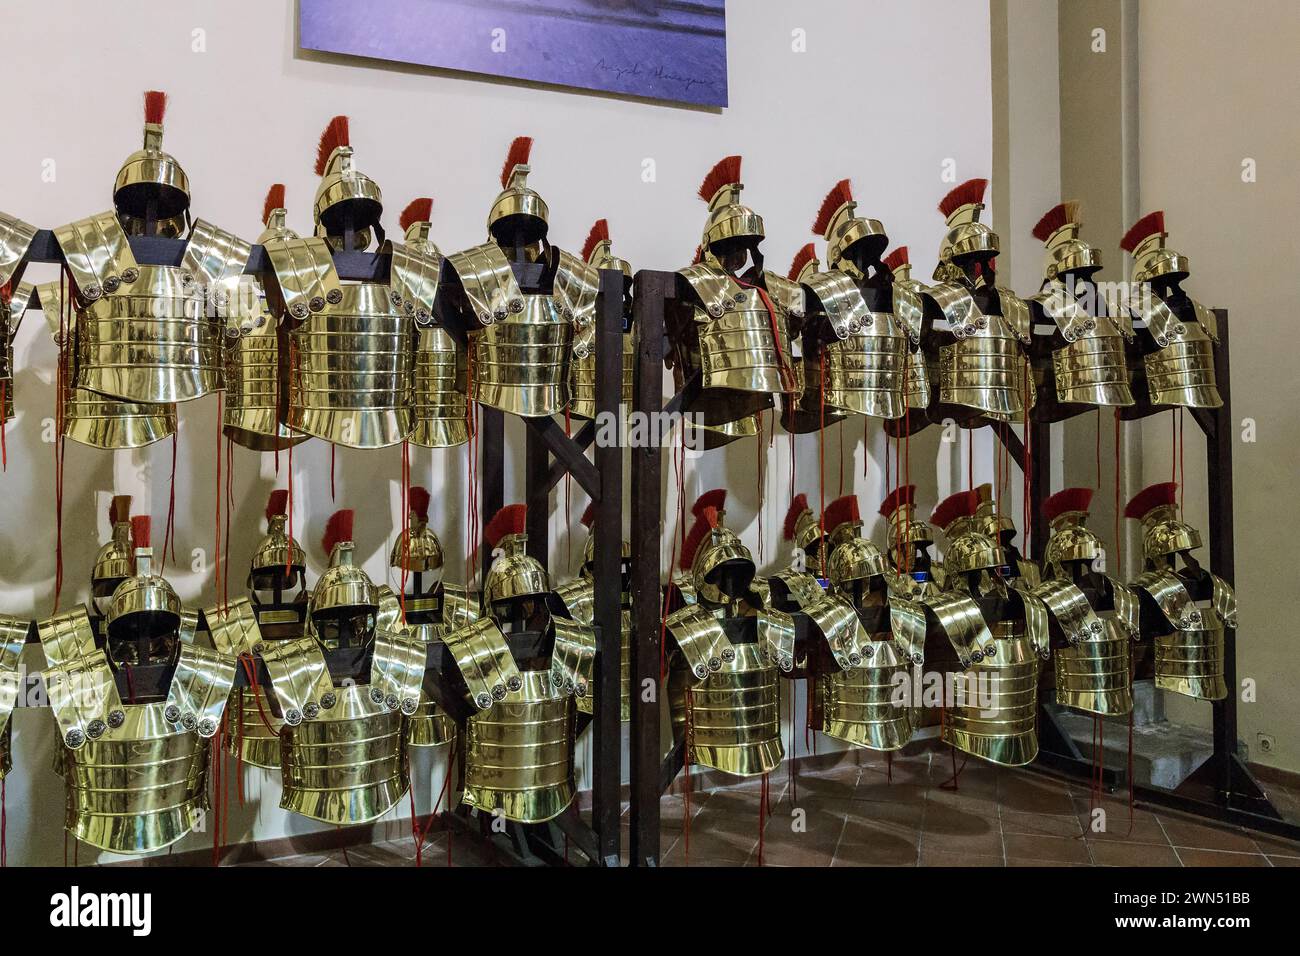 GIRONA, SPANIEN - 14. MAI 2017: Dies ist die Rüstung römischer Legionäre bei der Ausstellung von Karnevalsgegenständen in der Kirche St. Lukas. Stockfoto